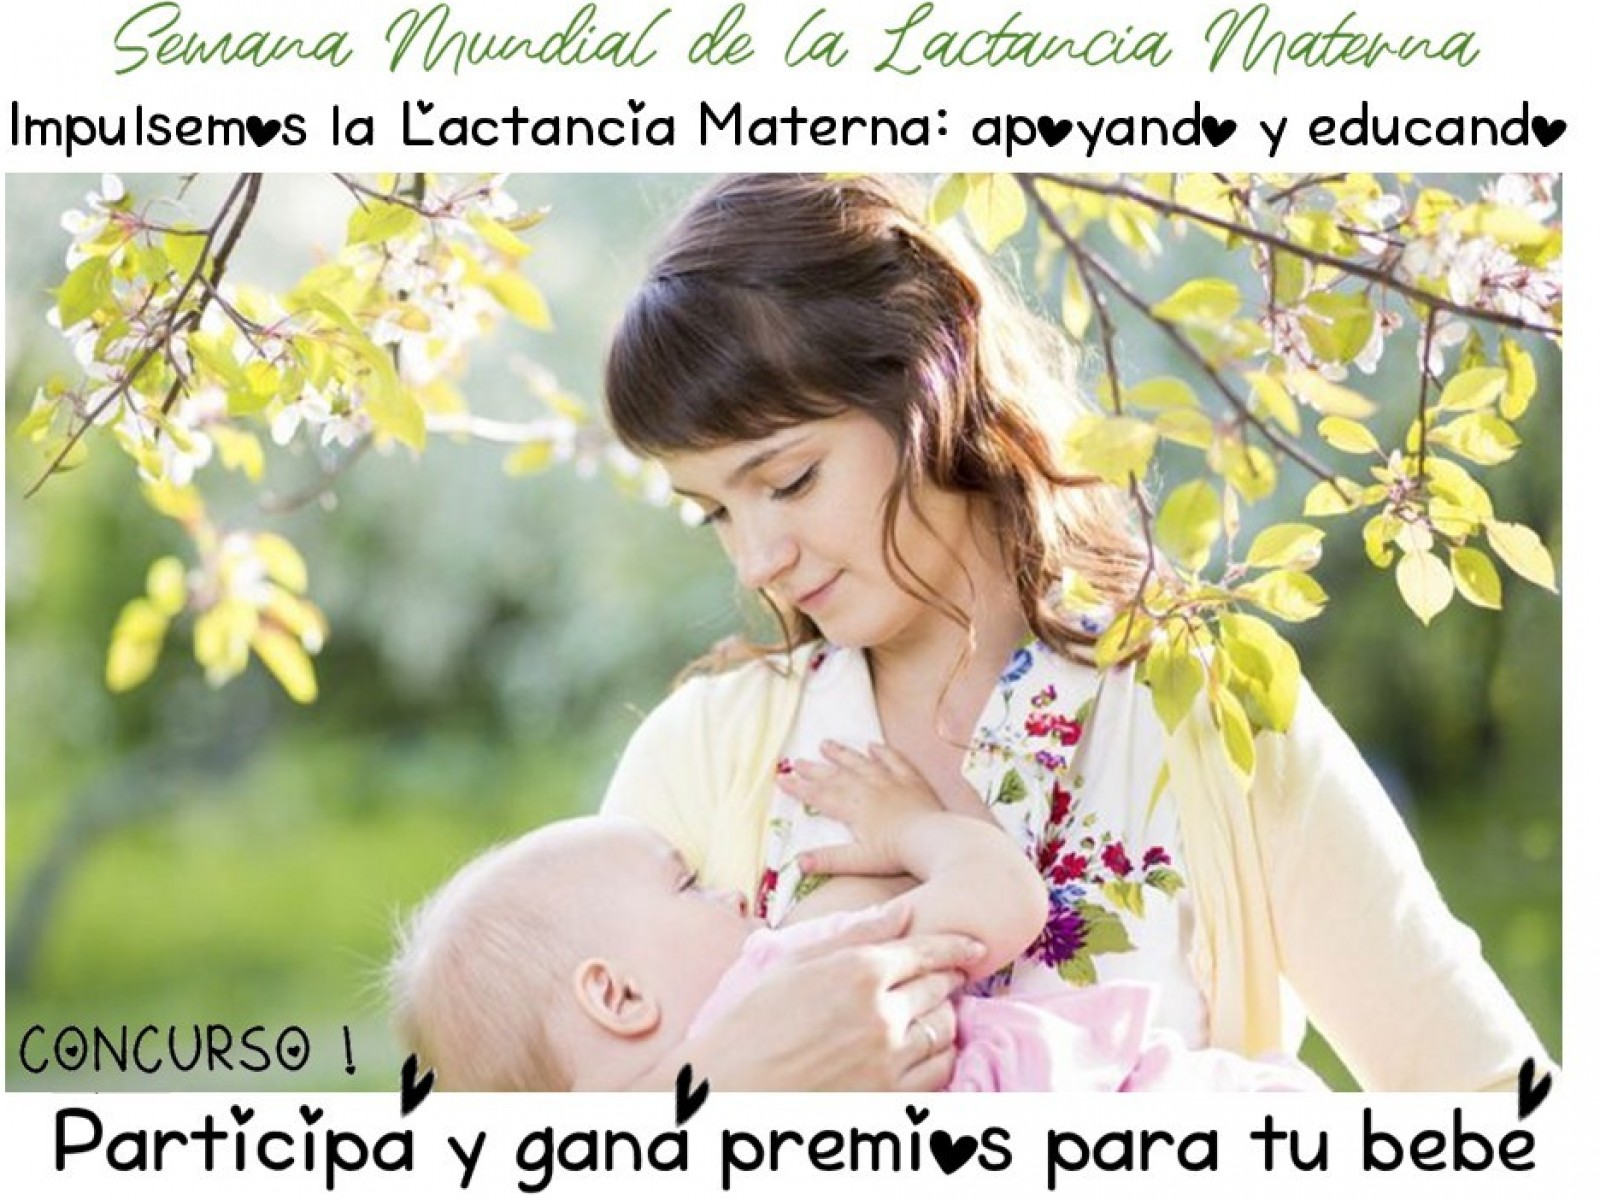 SEMANA MUNDIAL DE LA LACTANCIA MATERNA “Impulsemos la Lactancia Materna: apoyando y educando”.  